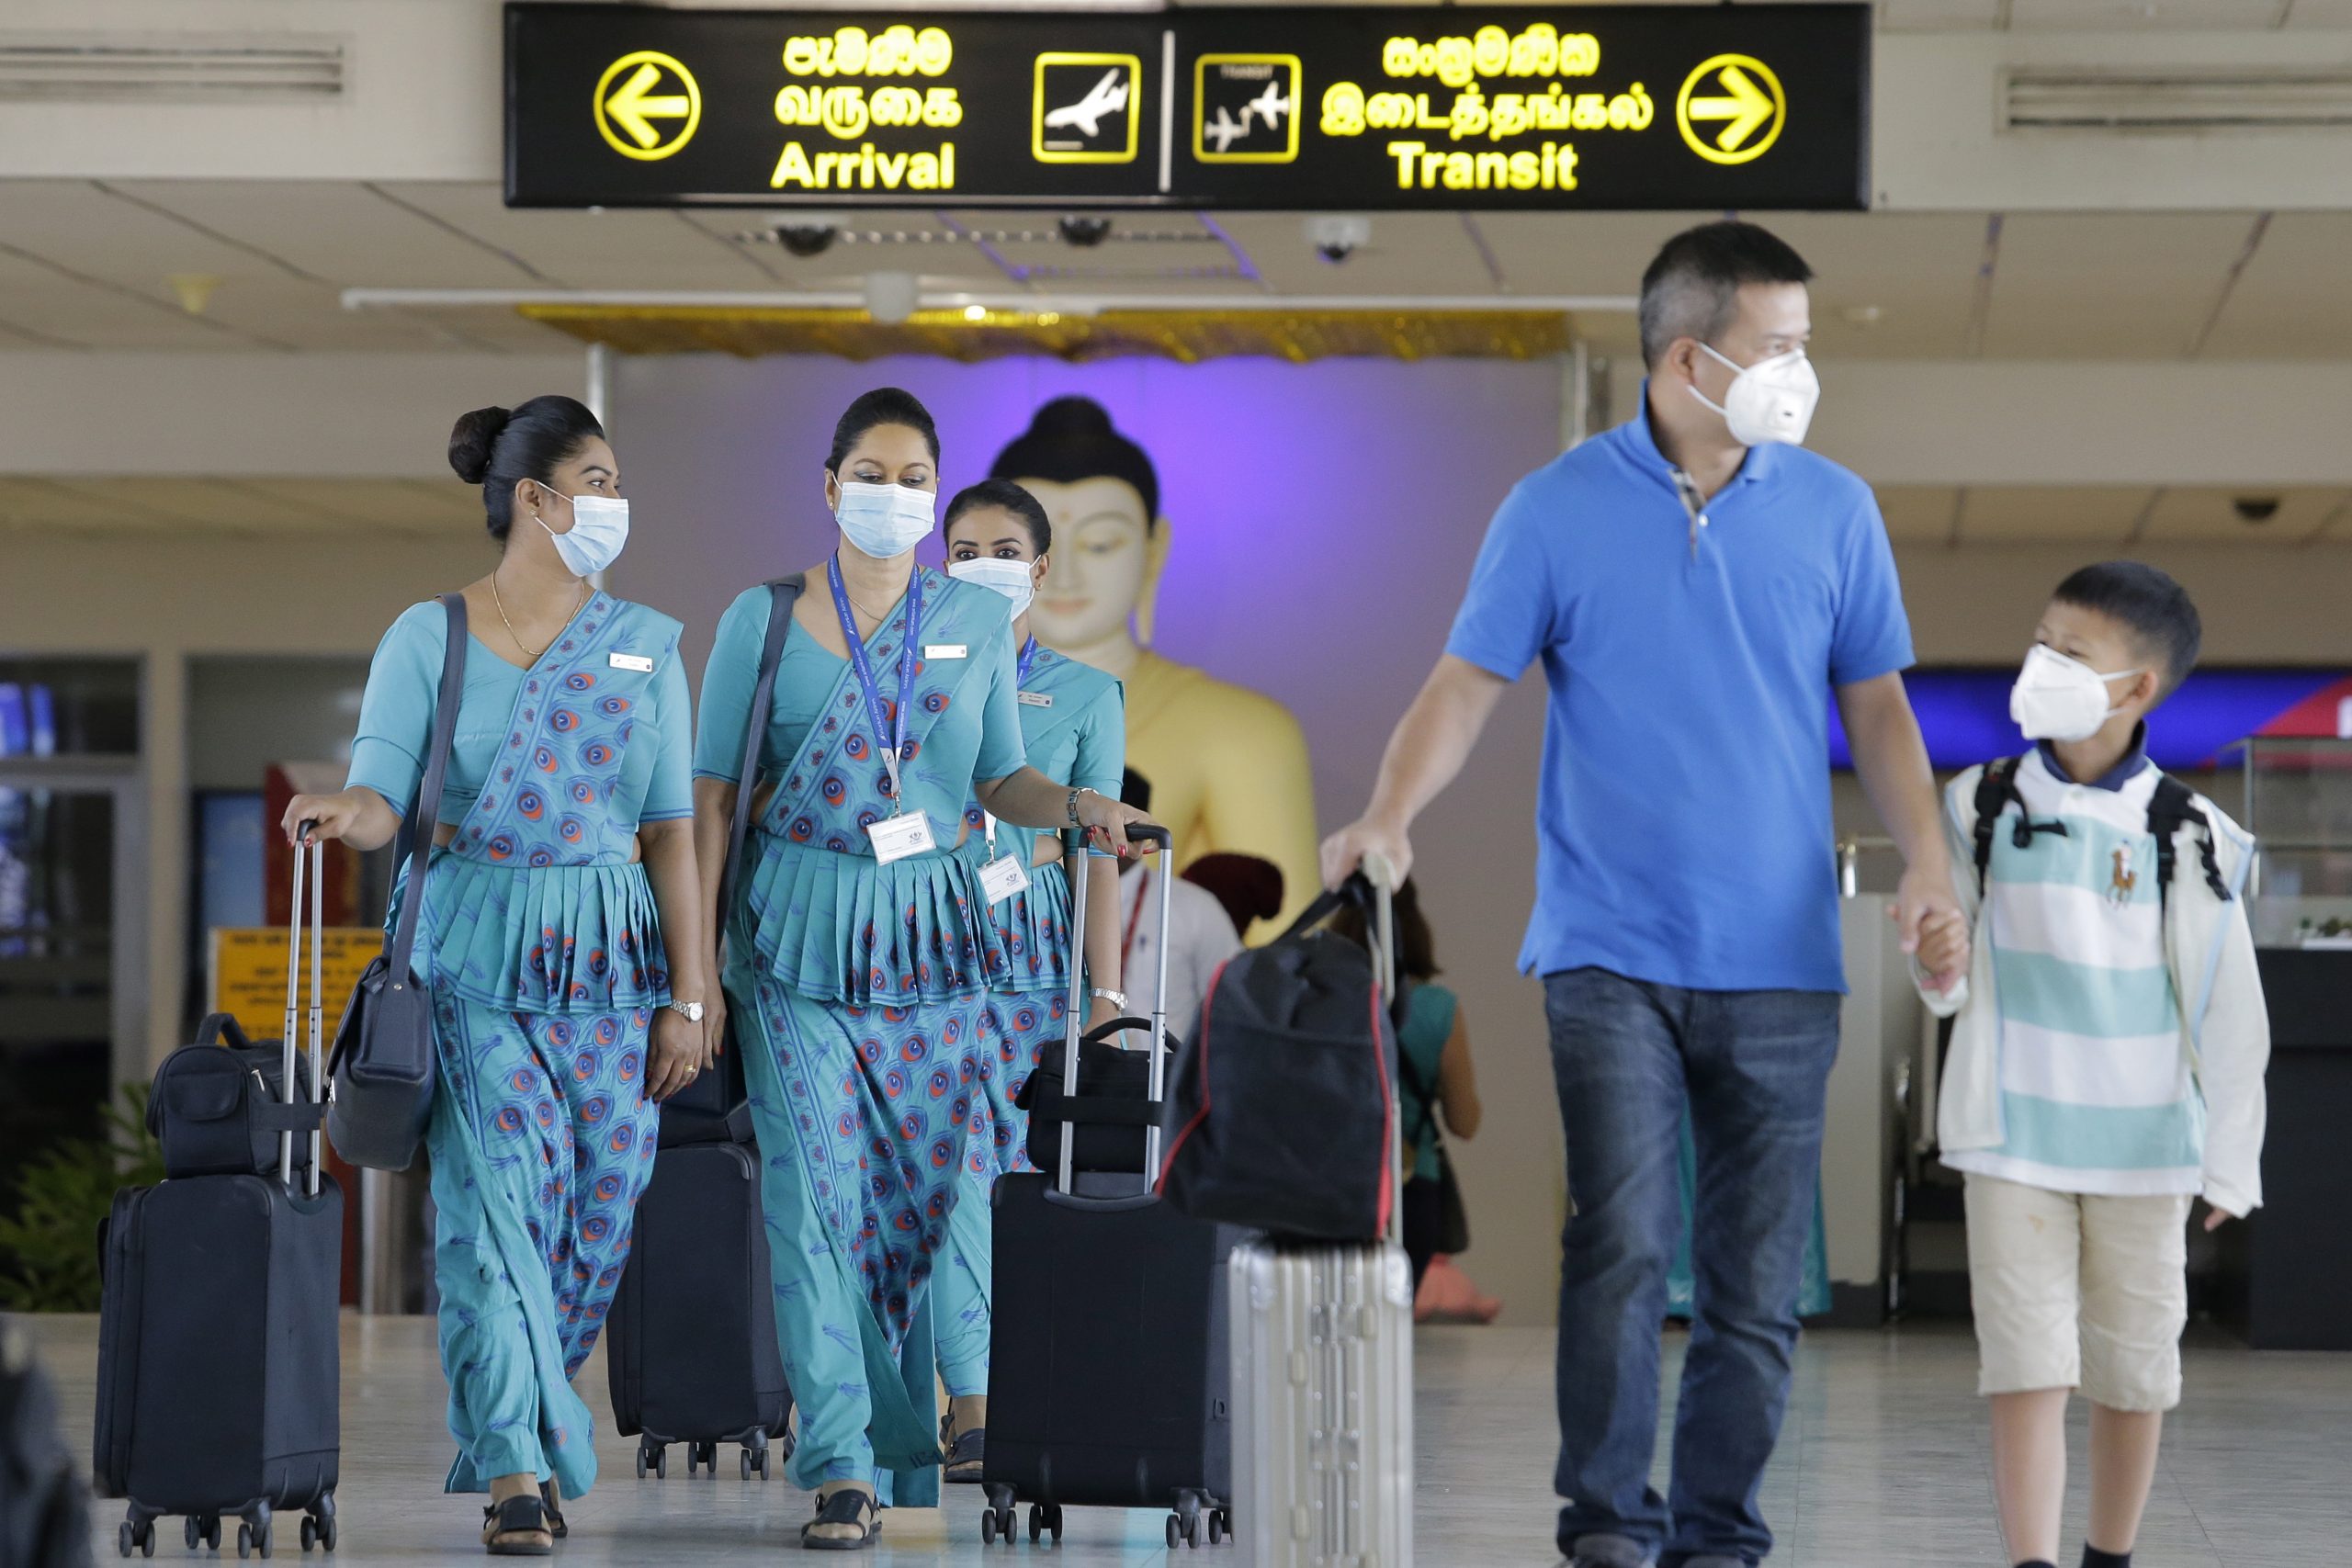 Passagiers en luchtvaartpersoneel dragen mondkapjes op de internationale luchthaven van Sri Lanka.